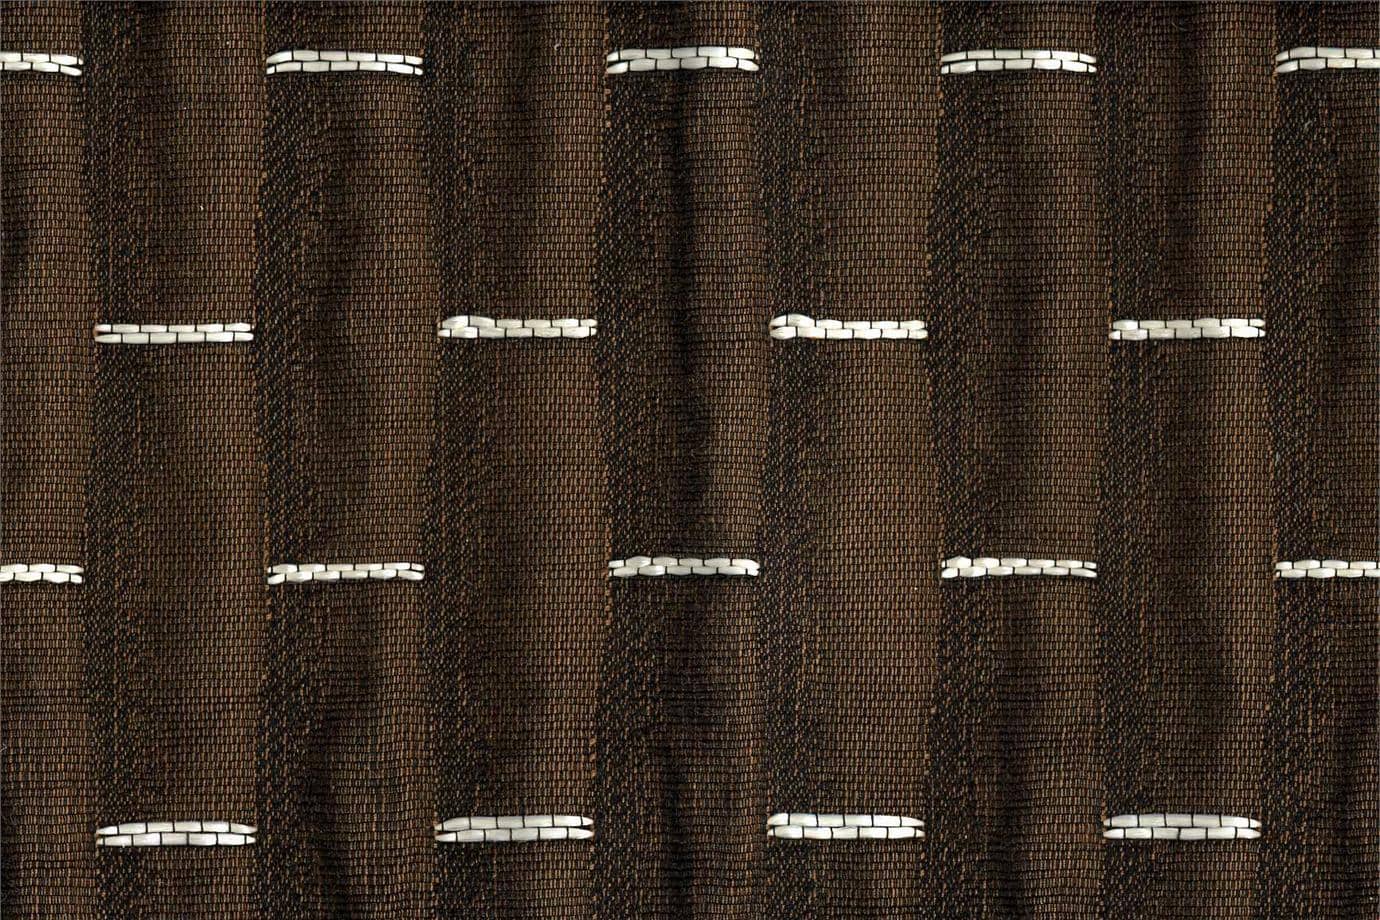 J1952 SAN VITTORE 005 Corteccia home decoration fabric